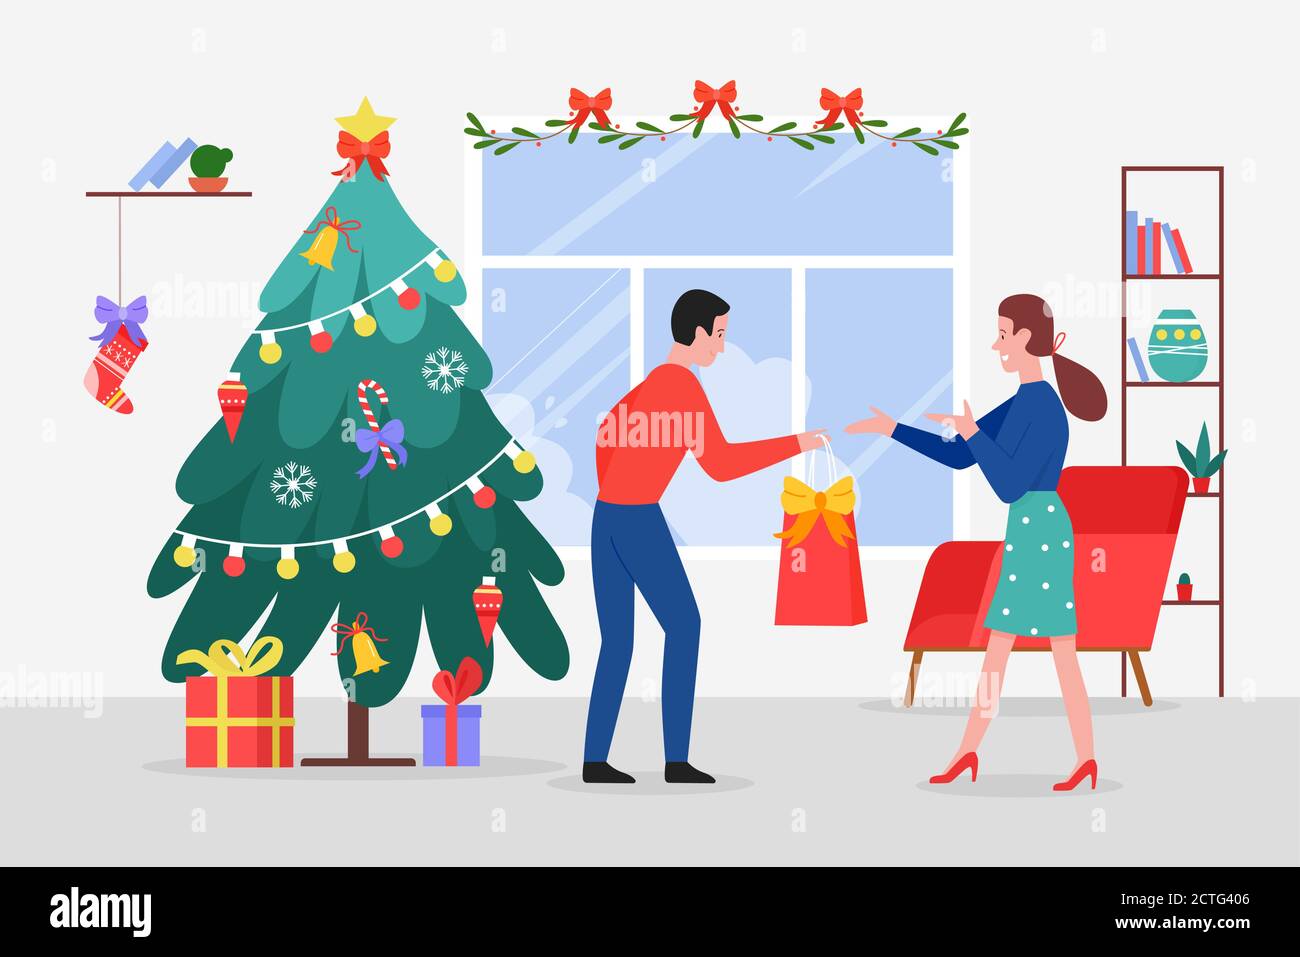 Dando regalos de Navidad ilustración vectorial. Dibujos animados pareja  plana dar regalos de Navidad antes de la celebración de Nochebuena, feliz  vacaciones de invierno en casa sala de estar con el árbol